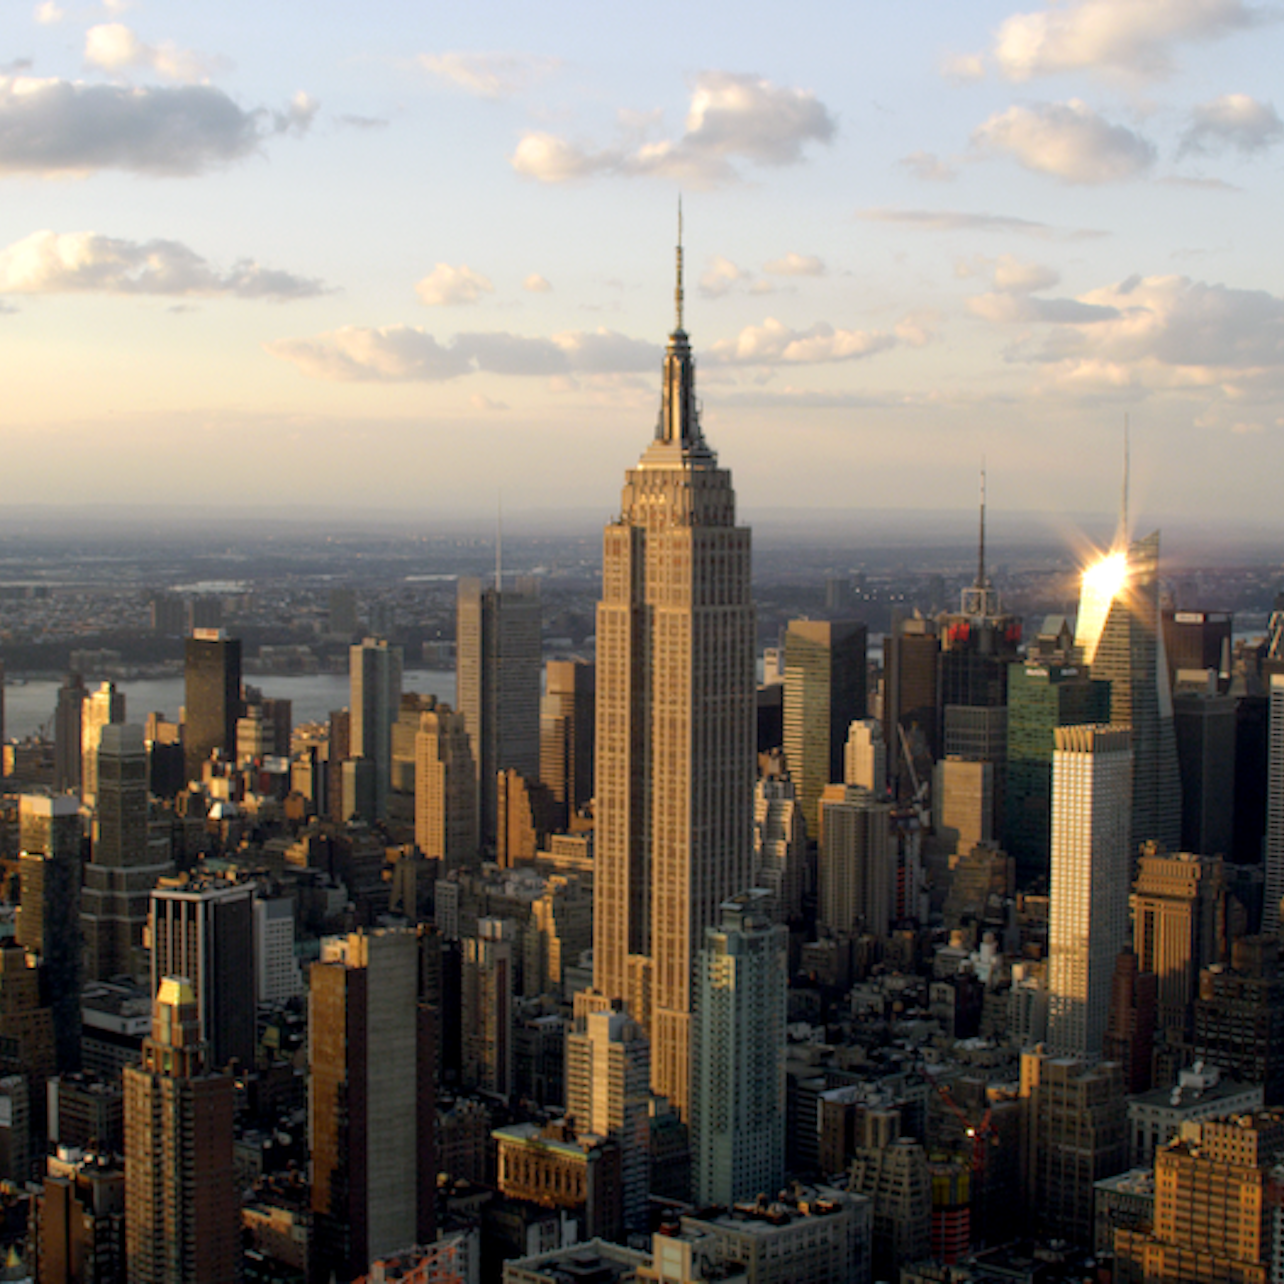 Nueva York CityPASS: Ahorra un 40% en la entrada a 5 atracciones principales - Alojamientos en Nueva York